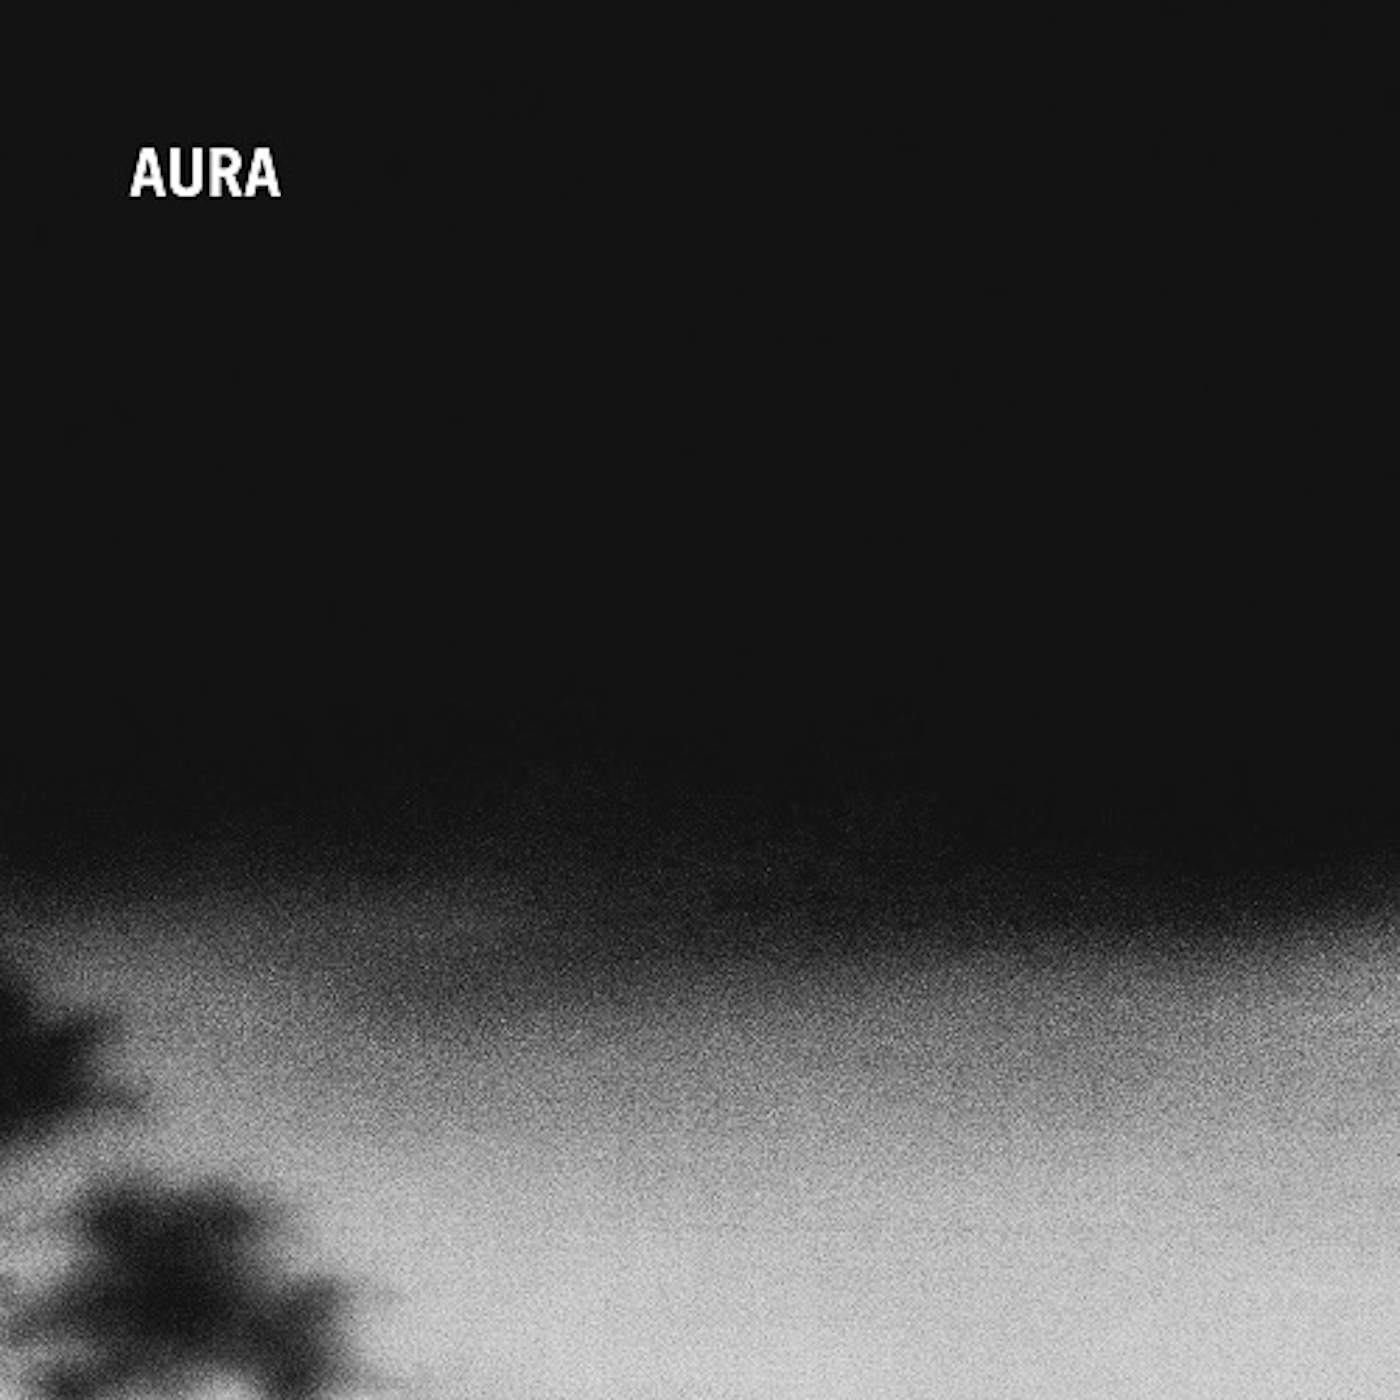 Aura Vinyl Record